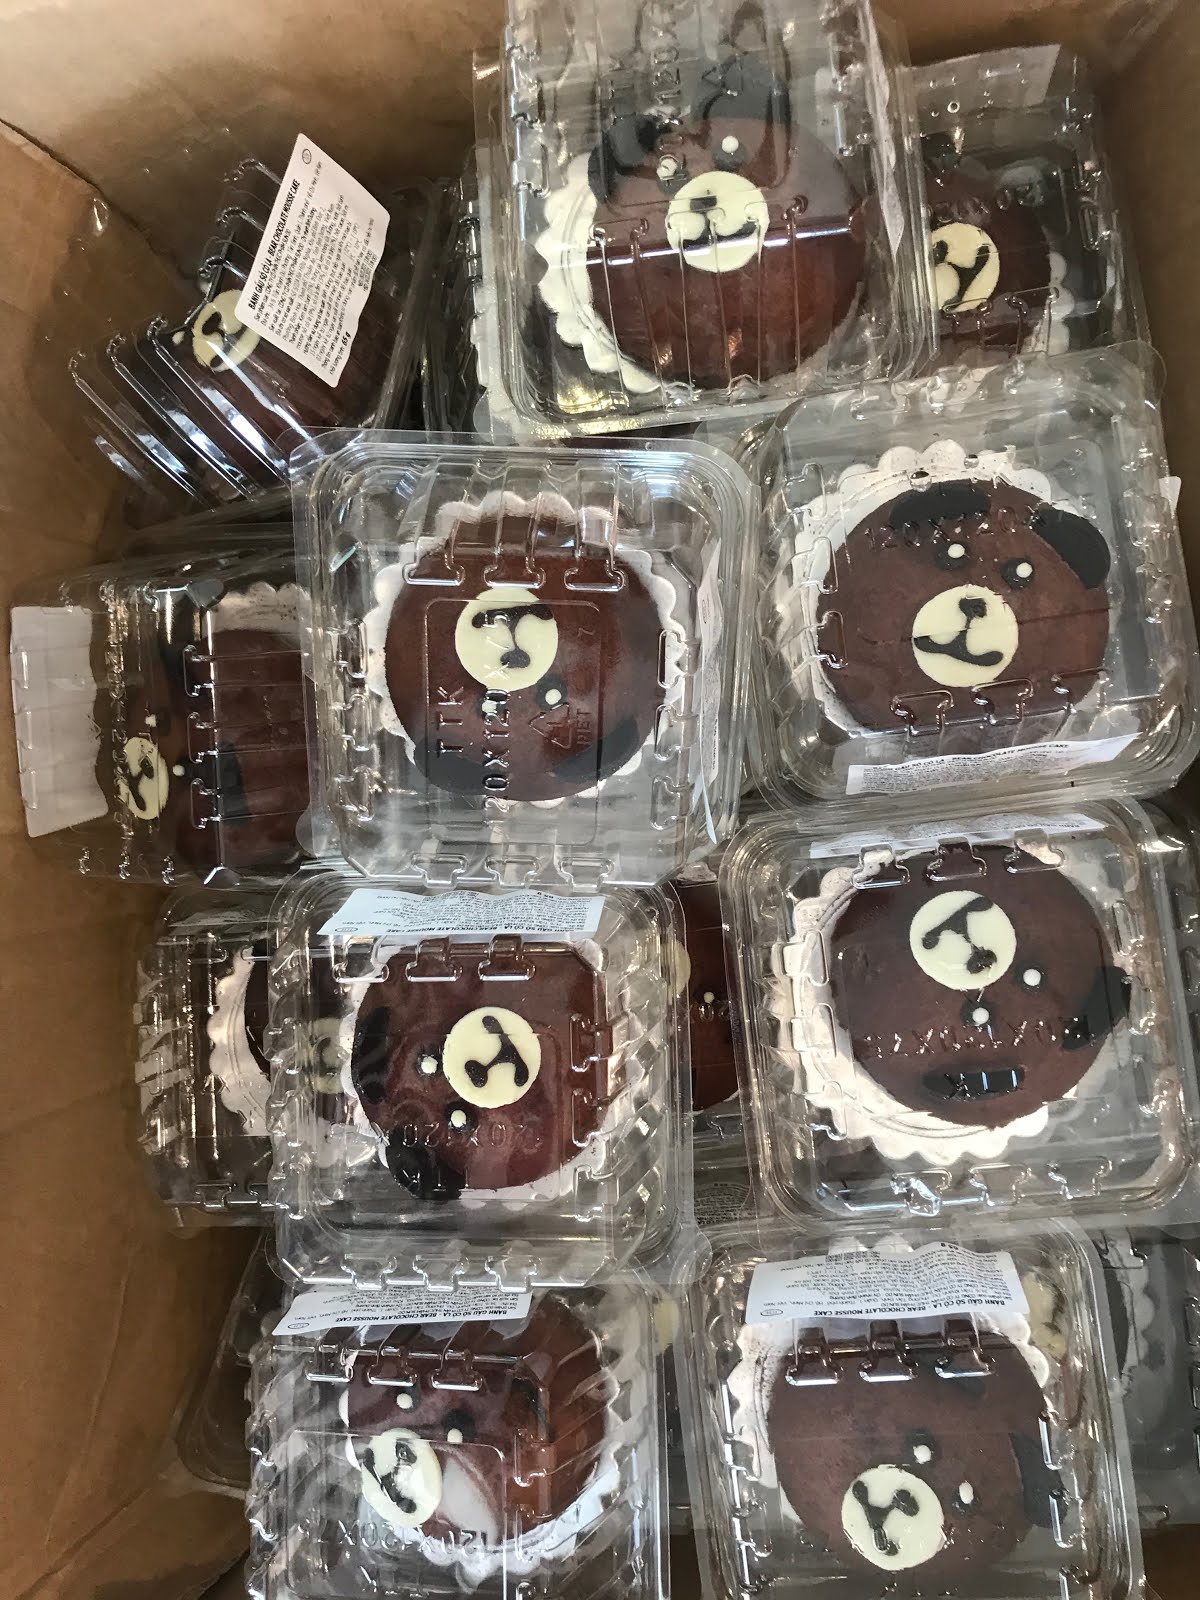 Bear cakes